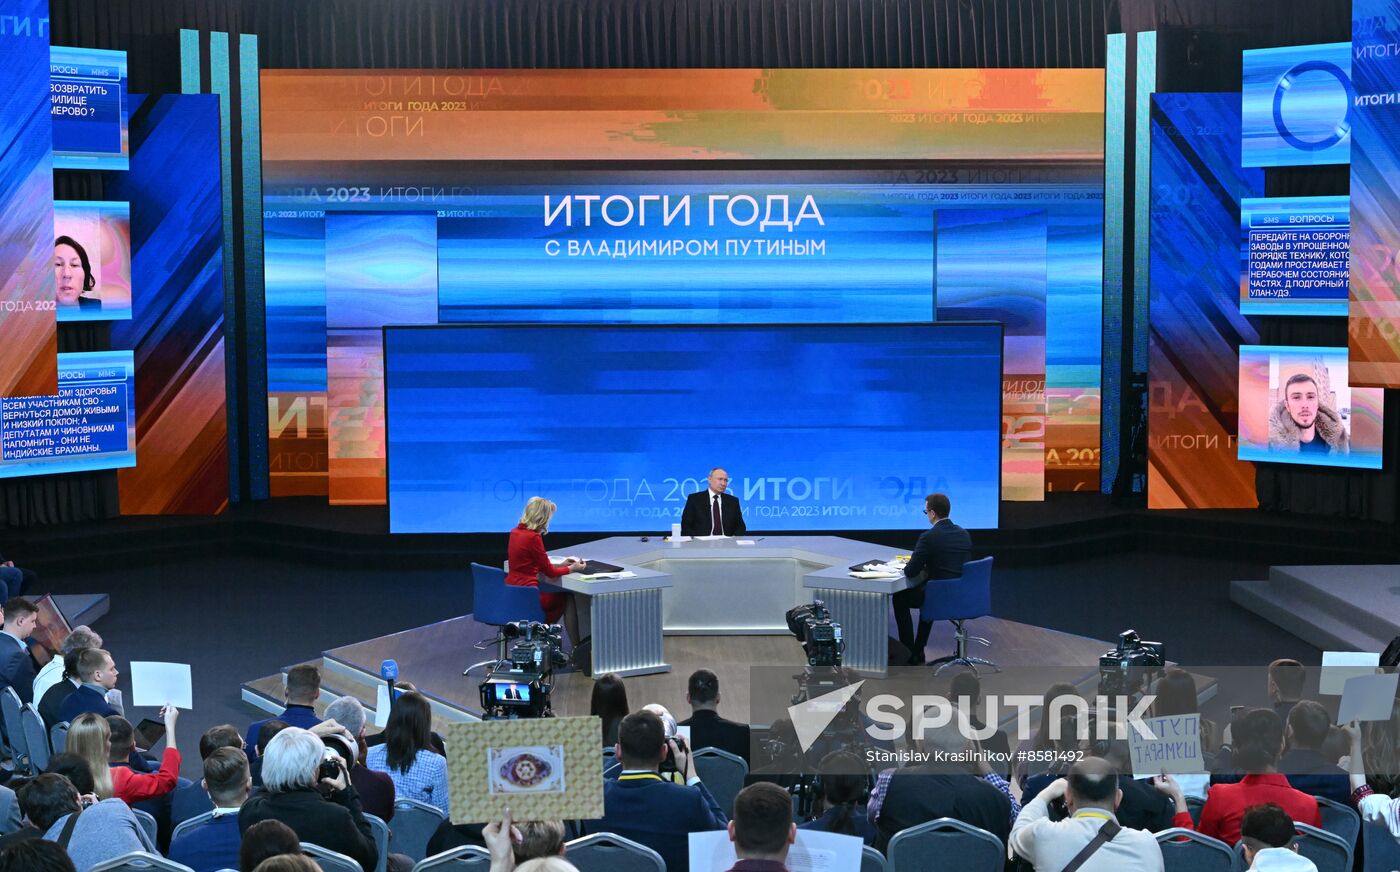 Russia Putin Press Conference